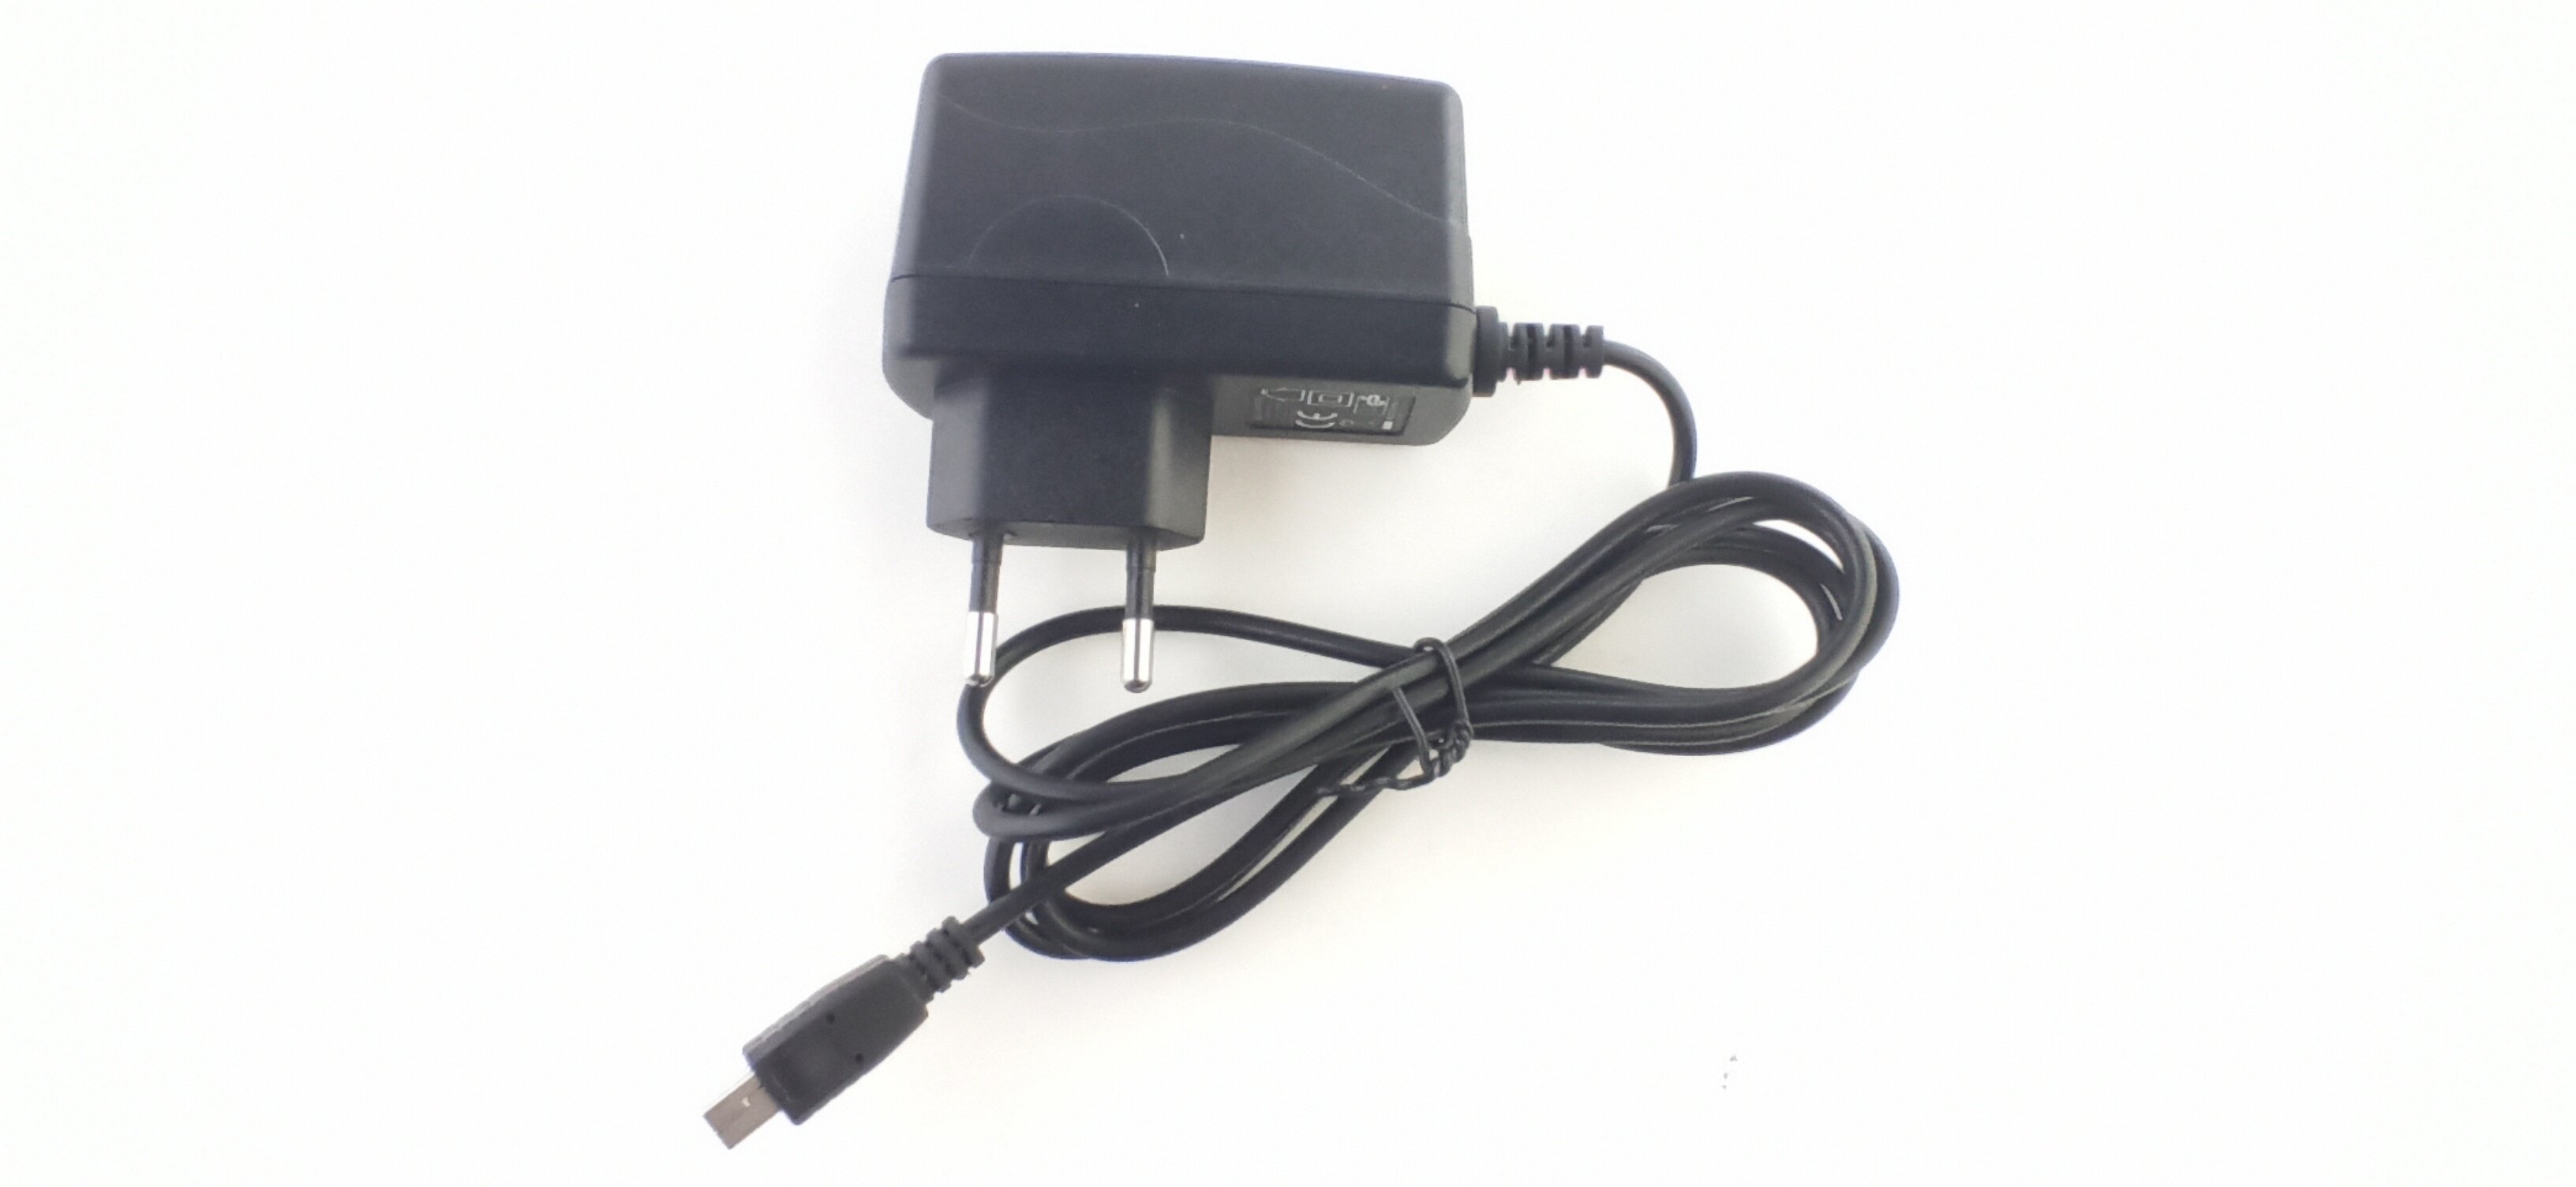 Блок питания 5V/2A, шнур mini-USB (двусторонний, многоконтактный коннектор подобный Mini USB)